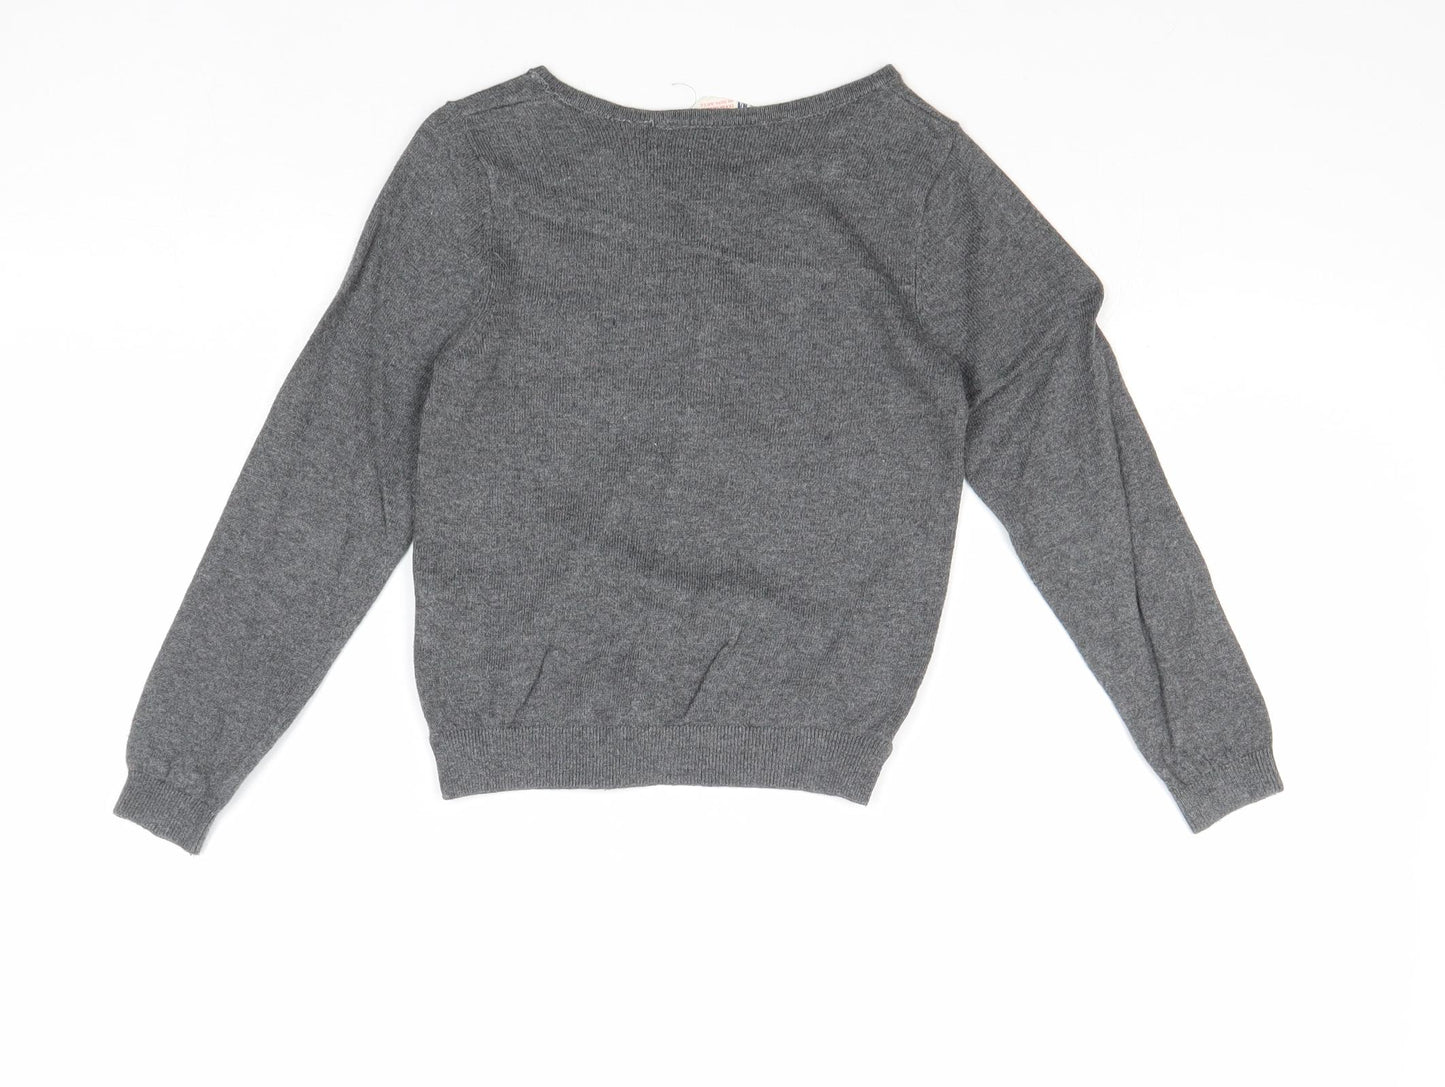 H&M Girls Grey Round Neck Cotton Cardigan Jumper Size 5-6 Years Button